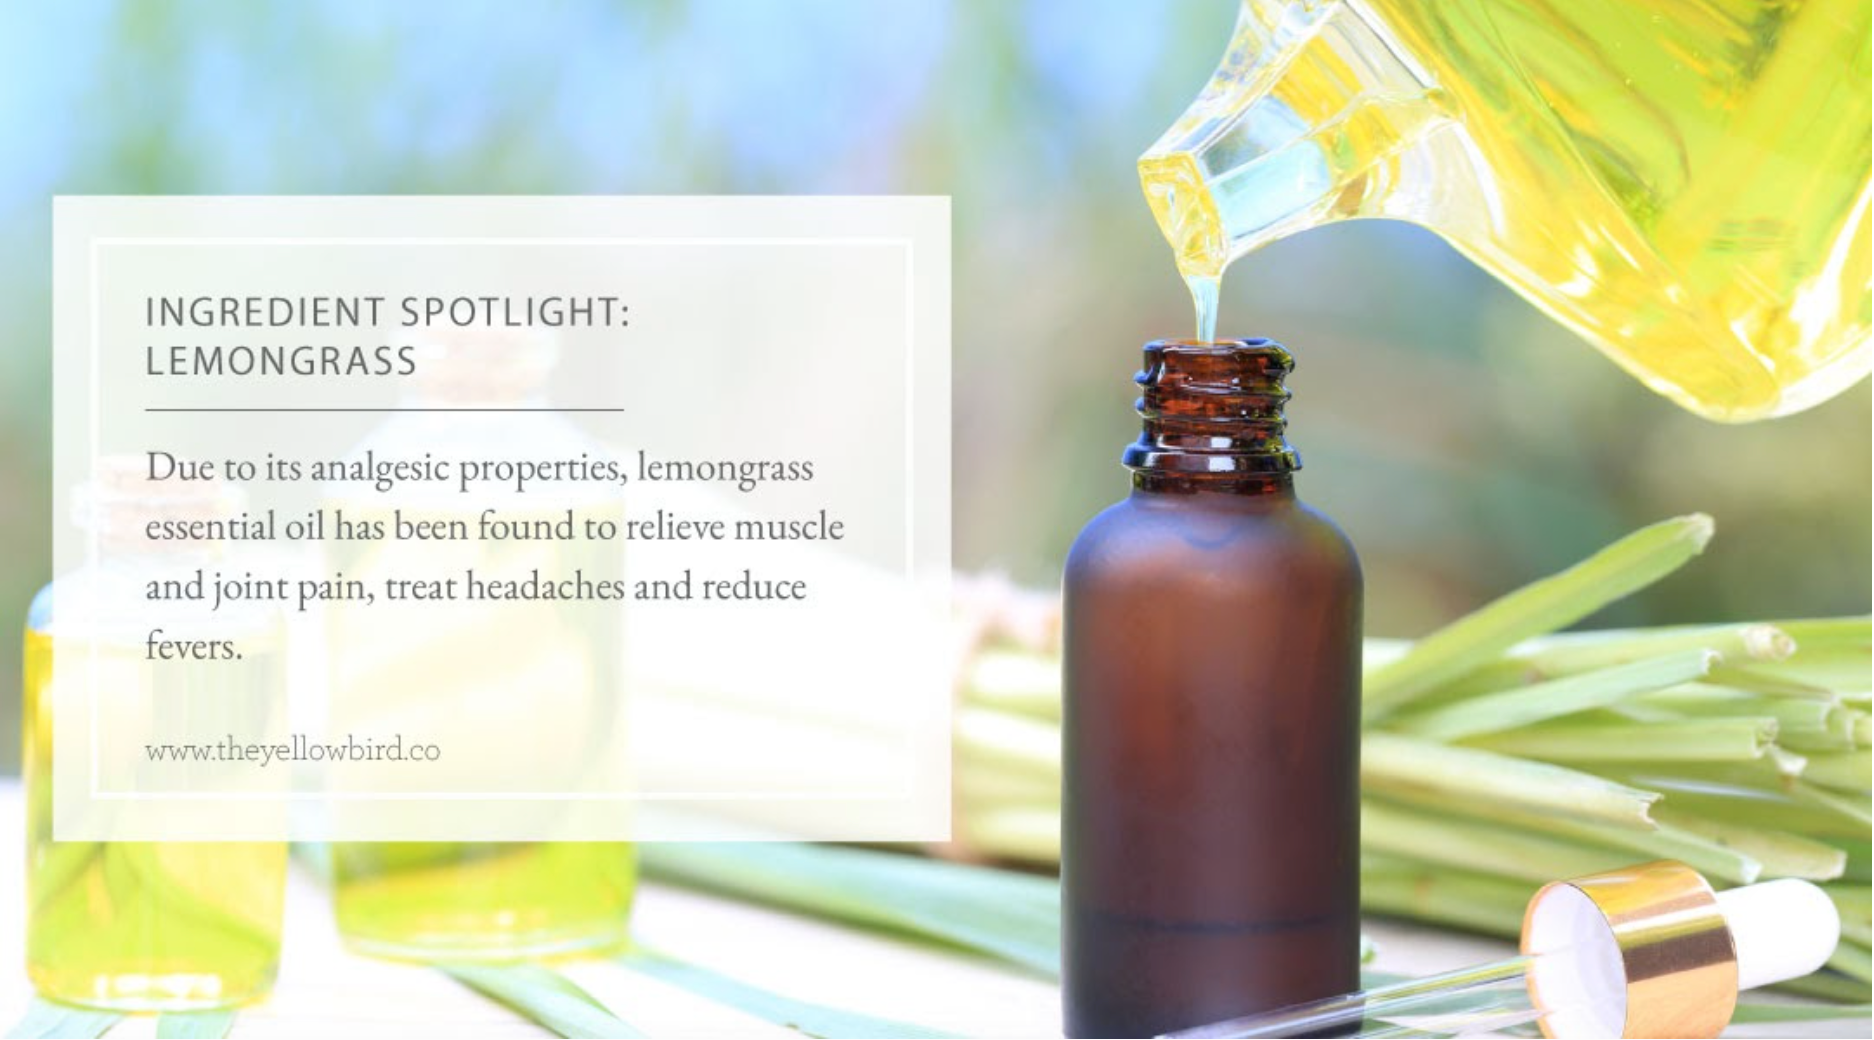 Lemongrass Essential Oil Recipes, Uses and Benefits Spotlight